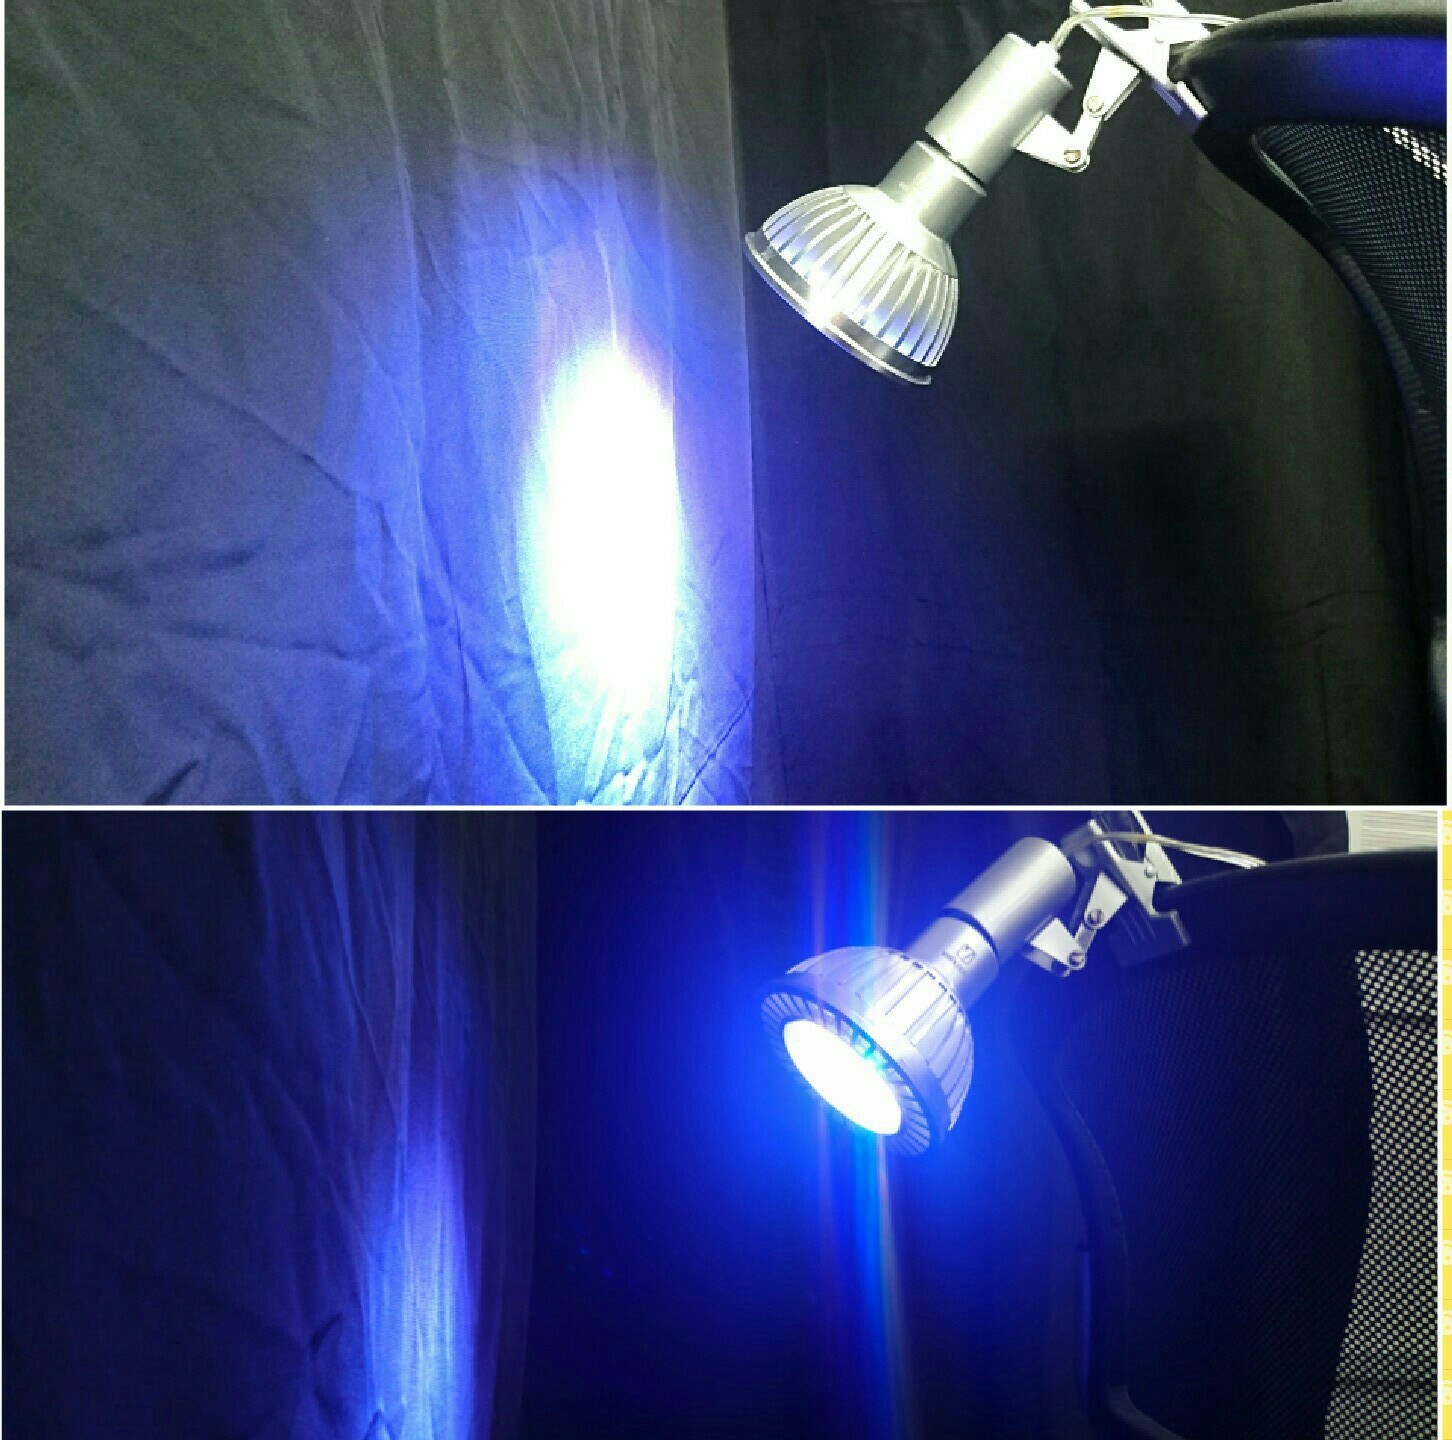 必見! 水槽用 照明 でおすすめの LEDライト | トロピカ